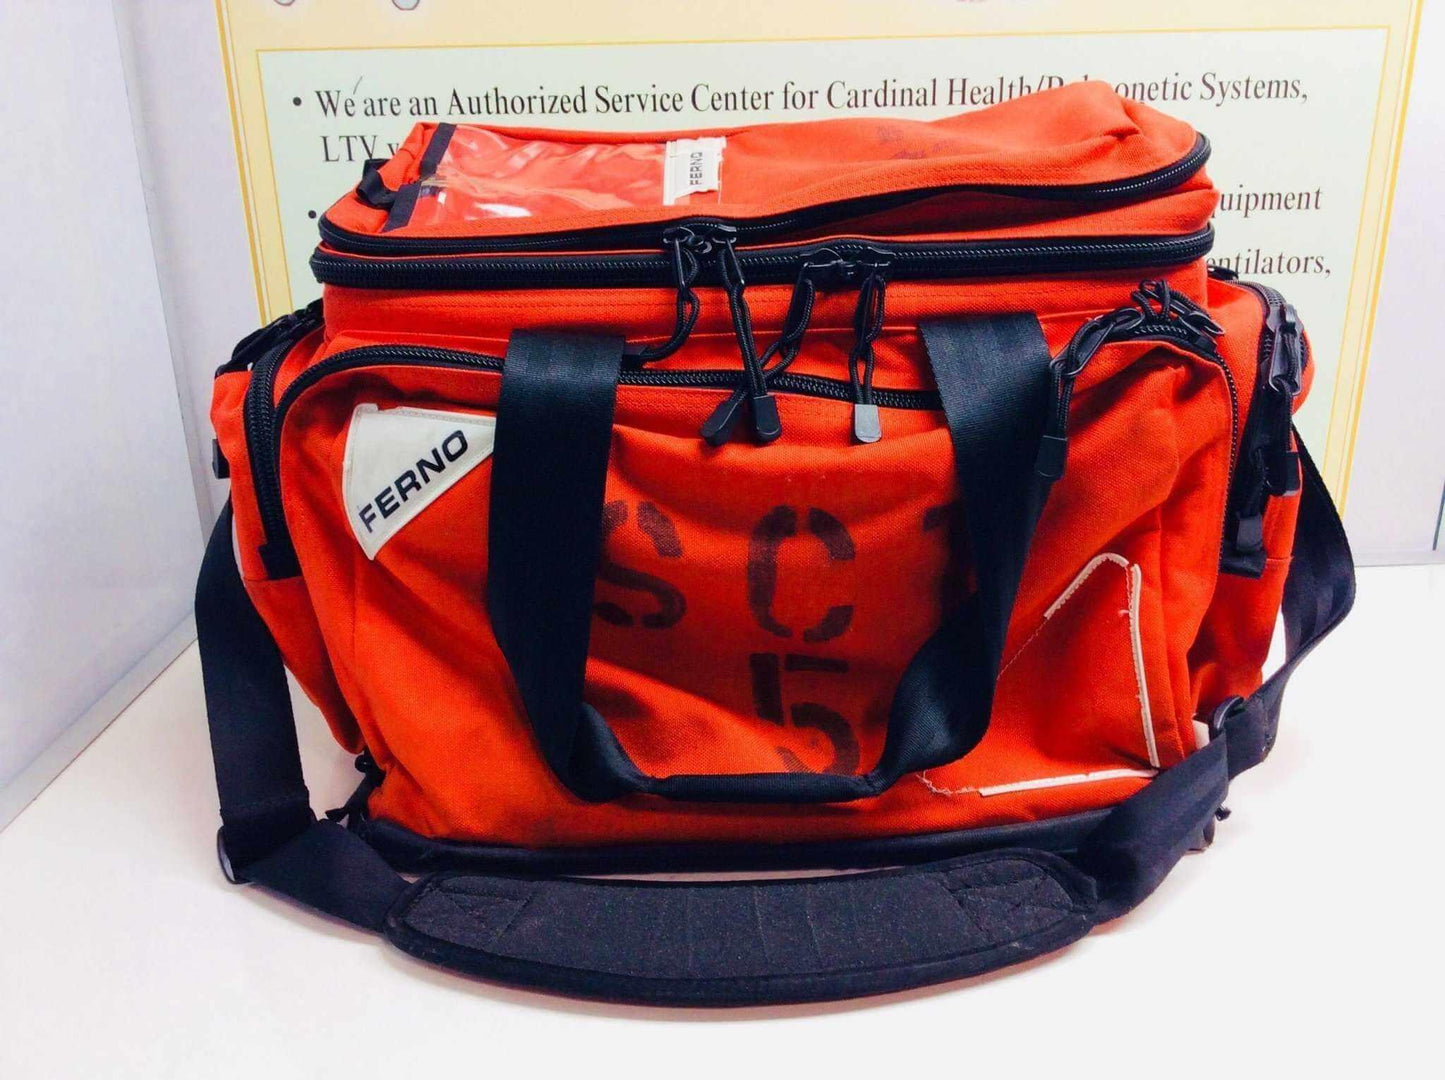 USED Ferno EMS EMT Medic First Aid Ambulance Trauma Bag 5108 - MBR Medicals